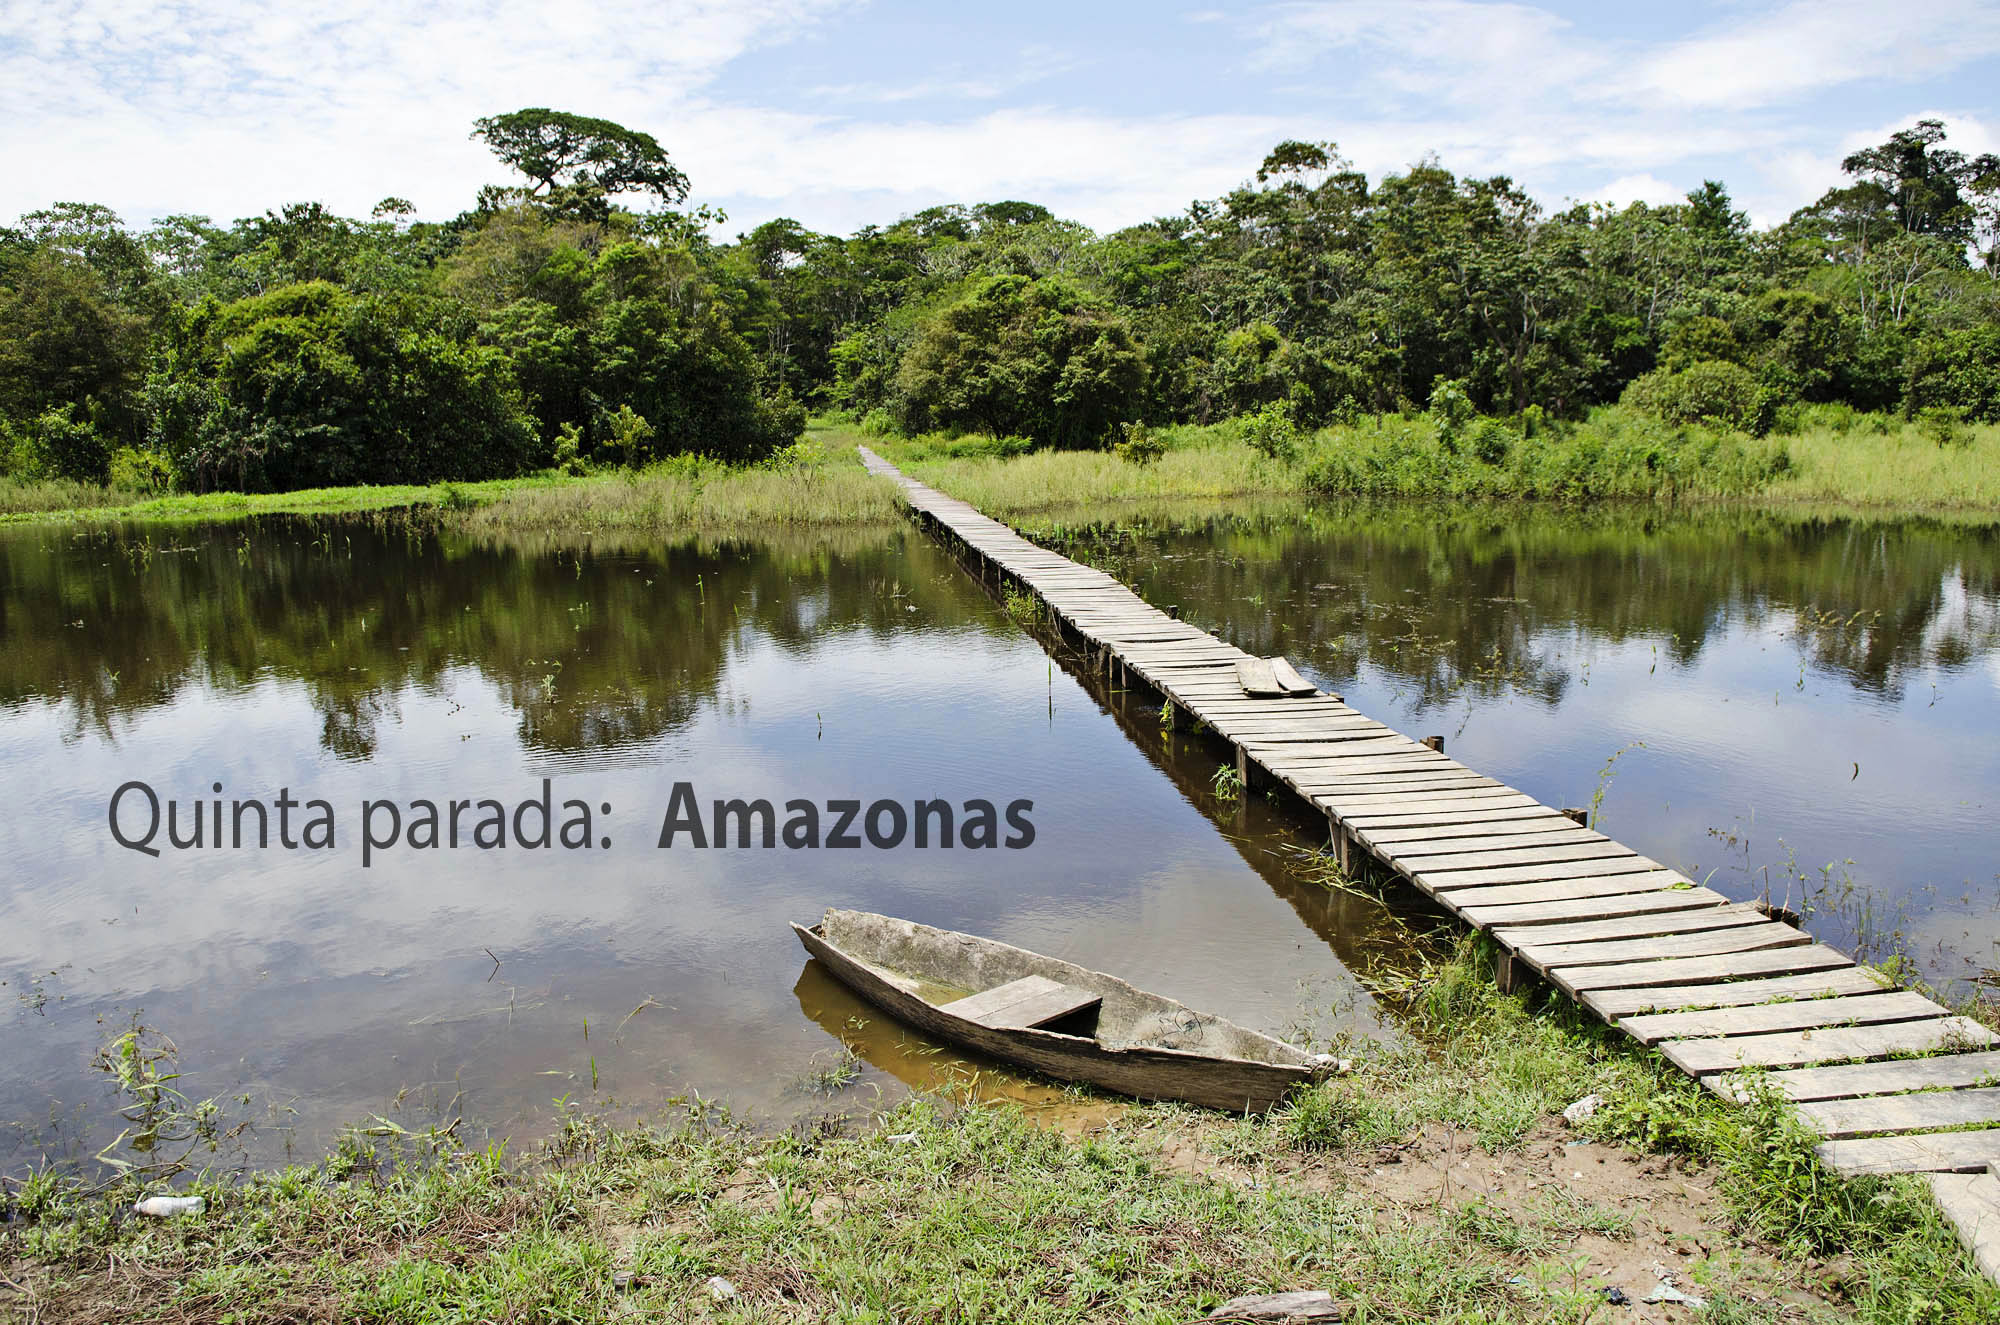 Rumbo al Amazonas